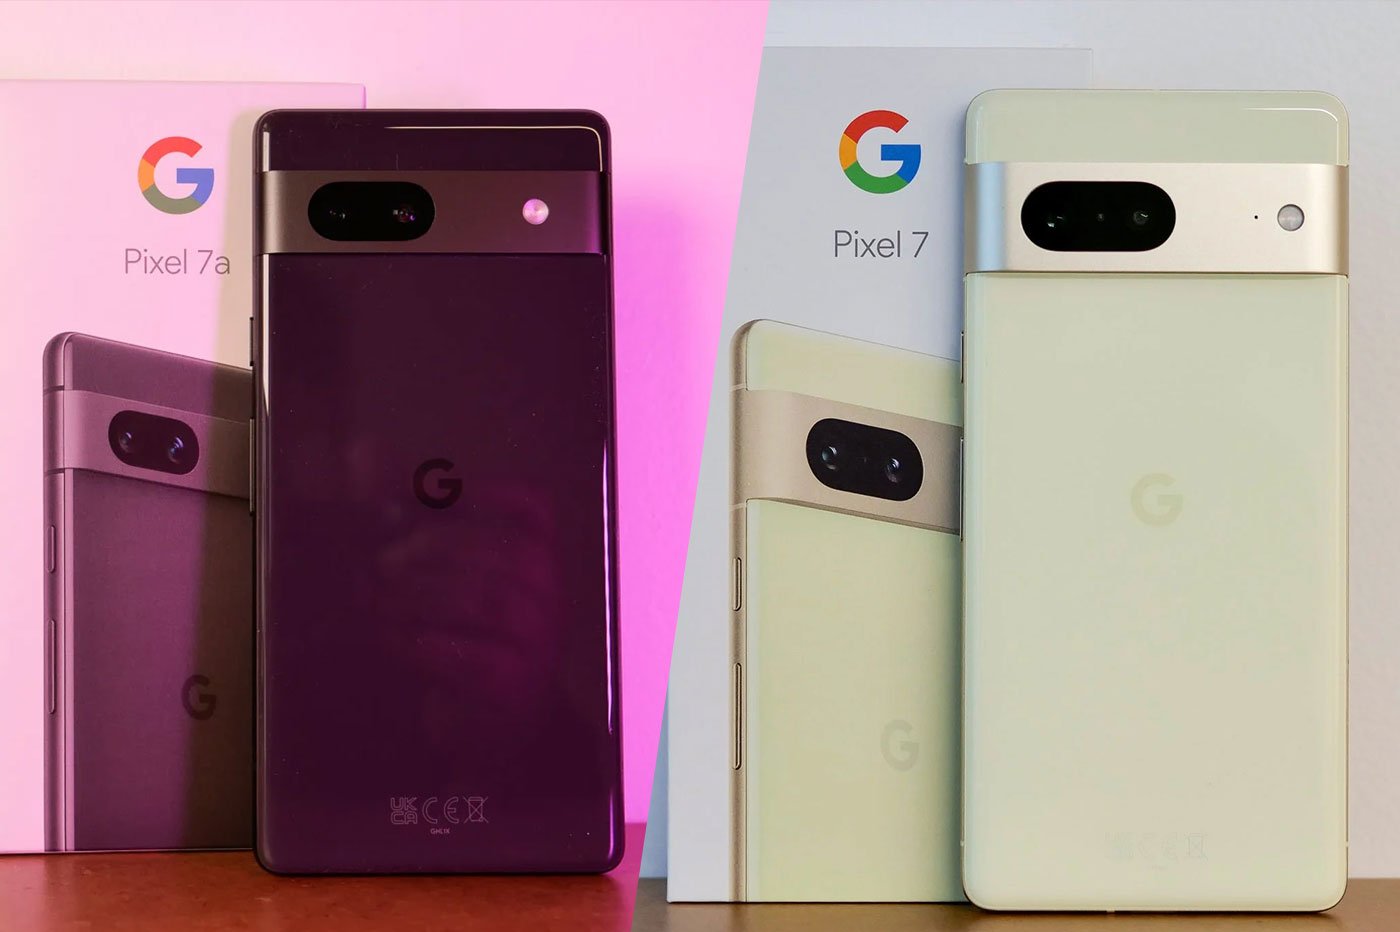 Google Pixel 7a vs Google Pixel 7